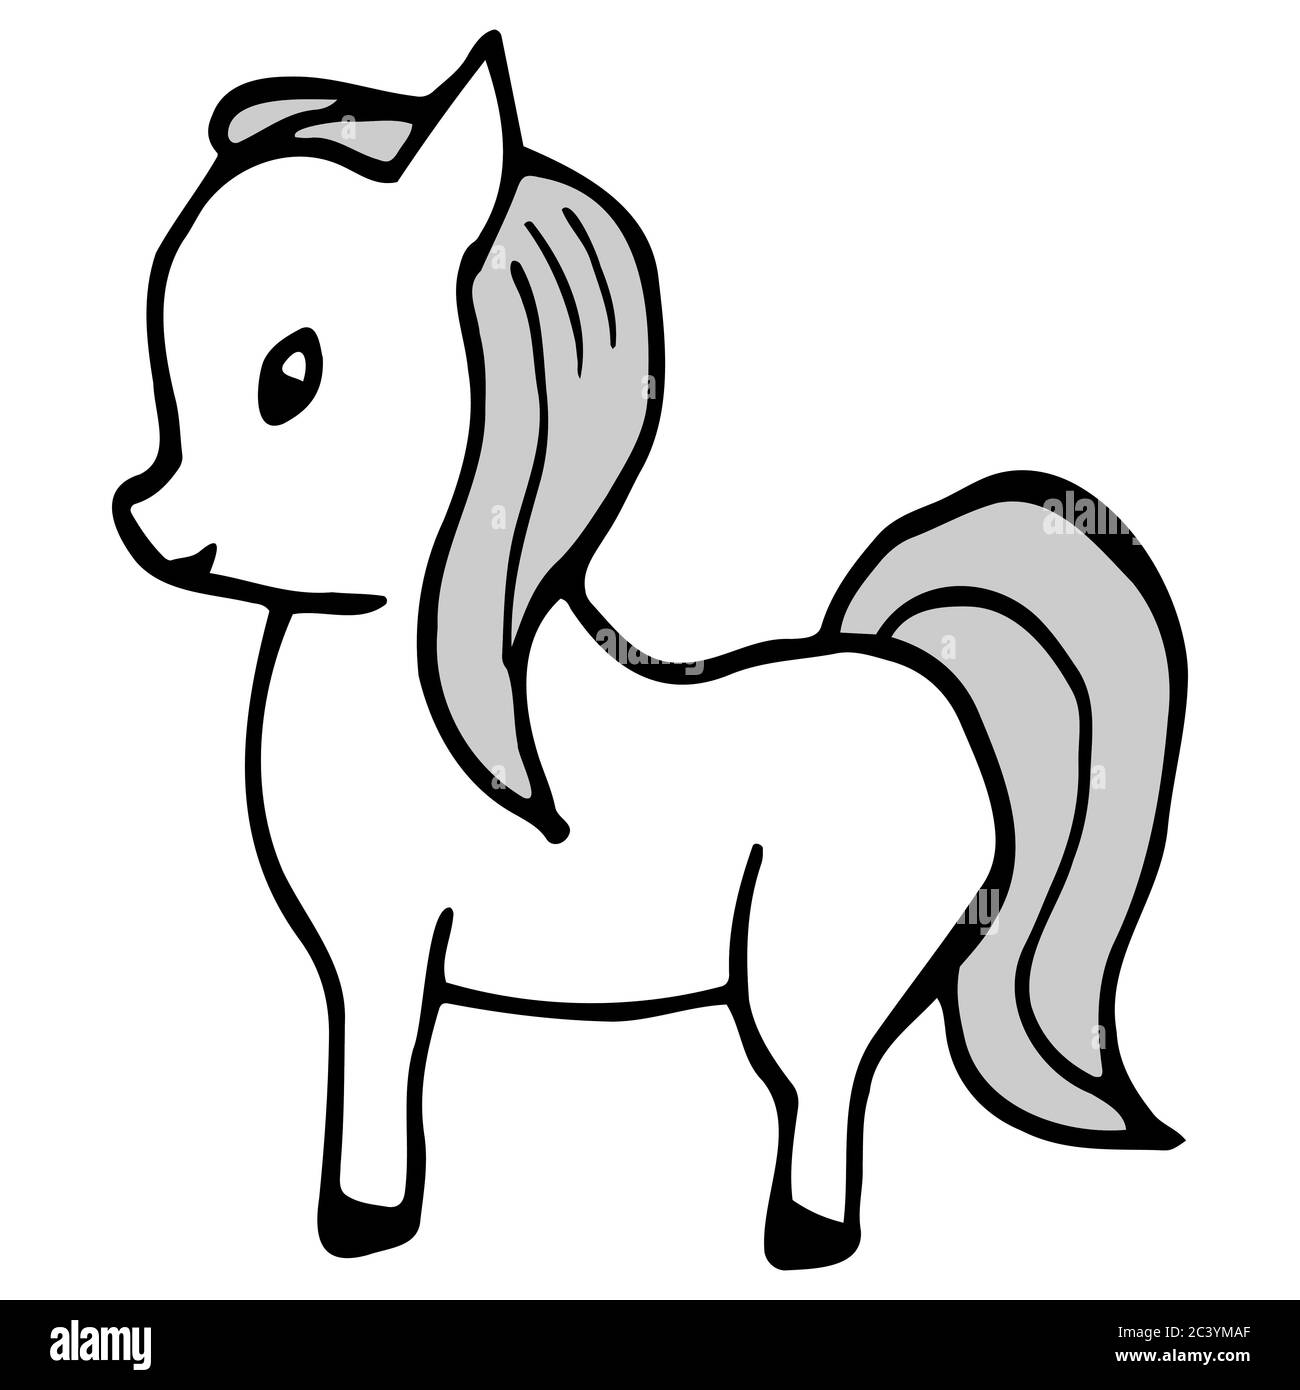 Cavallo tirato a mano (pony). Cartone animato colore cavallo contorno stile doodle. Immagine vettoriale trasparente isolata su sfondo bianco. Decorazione per schede Illustrazione Vettoriale